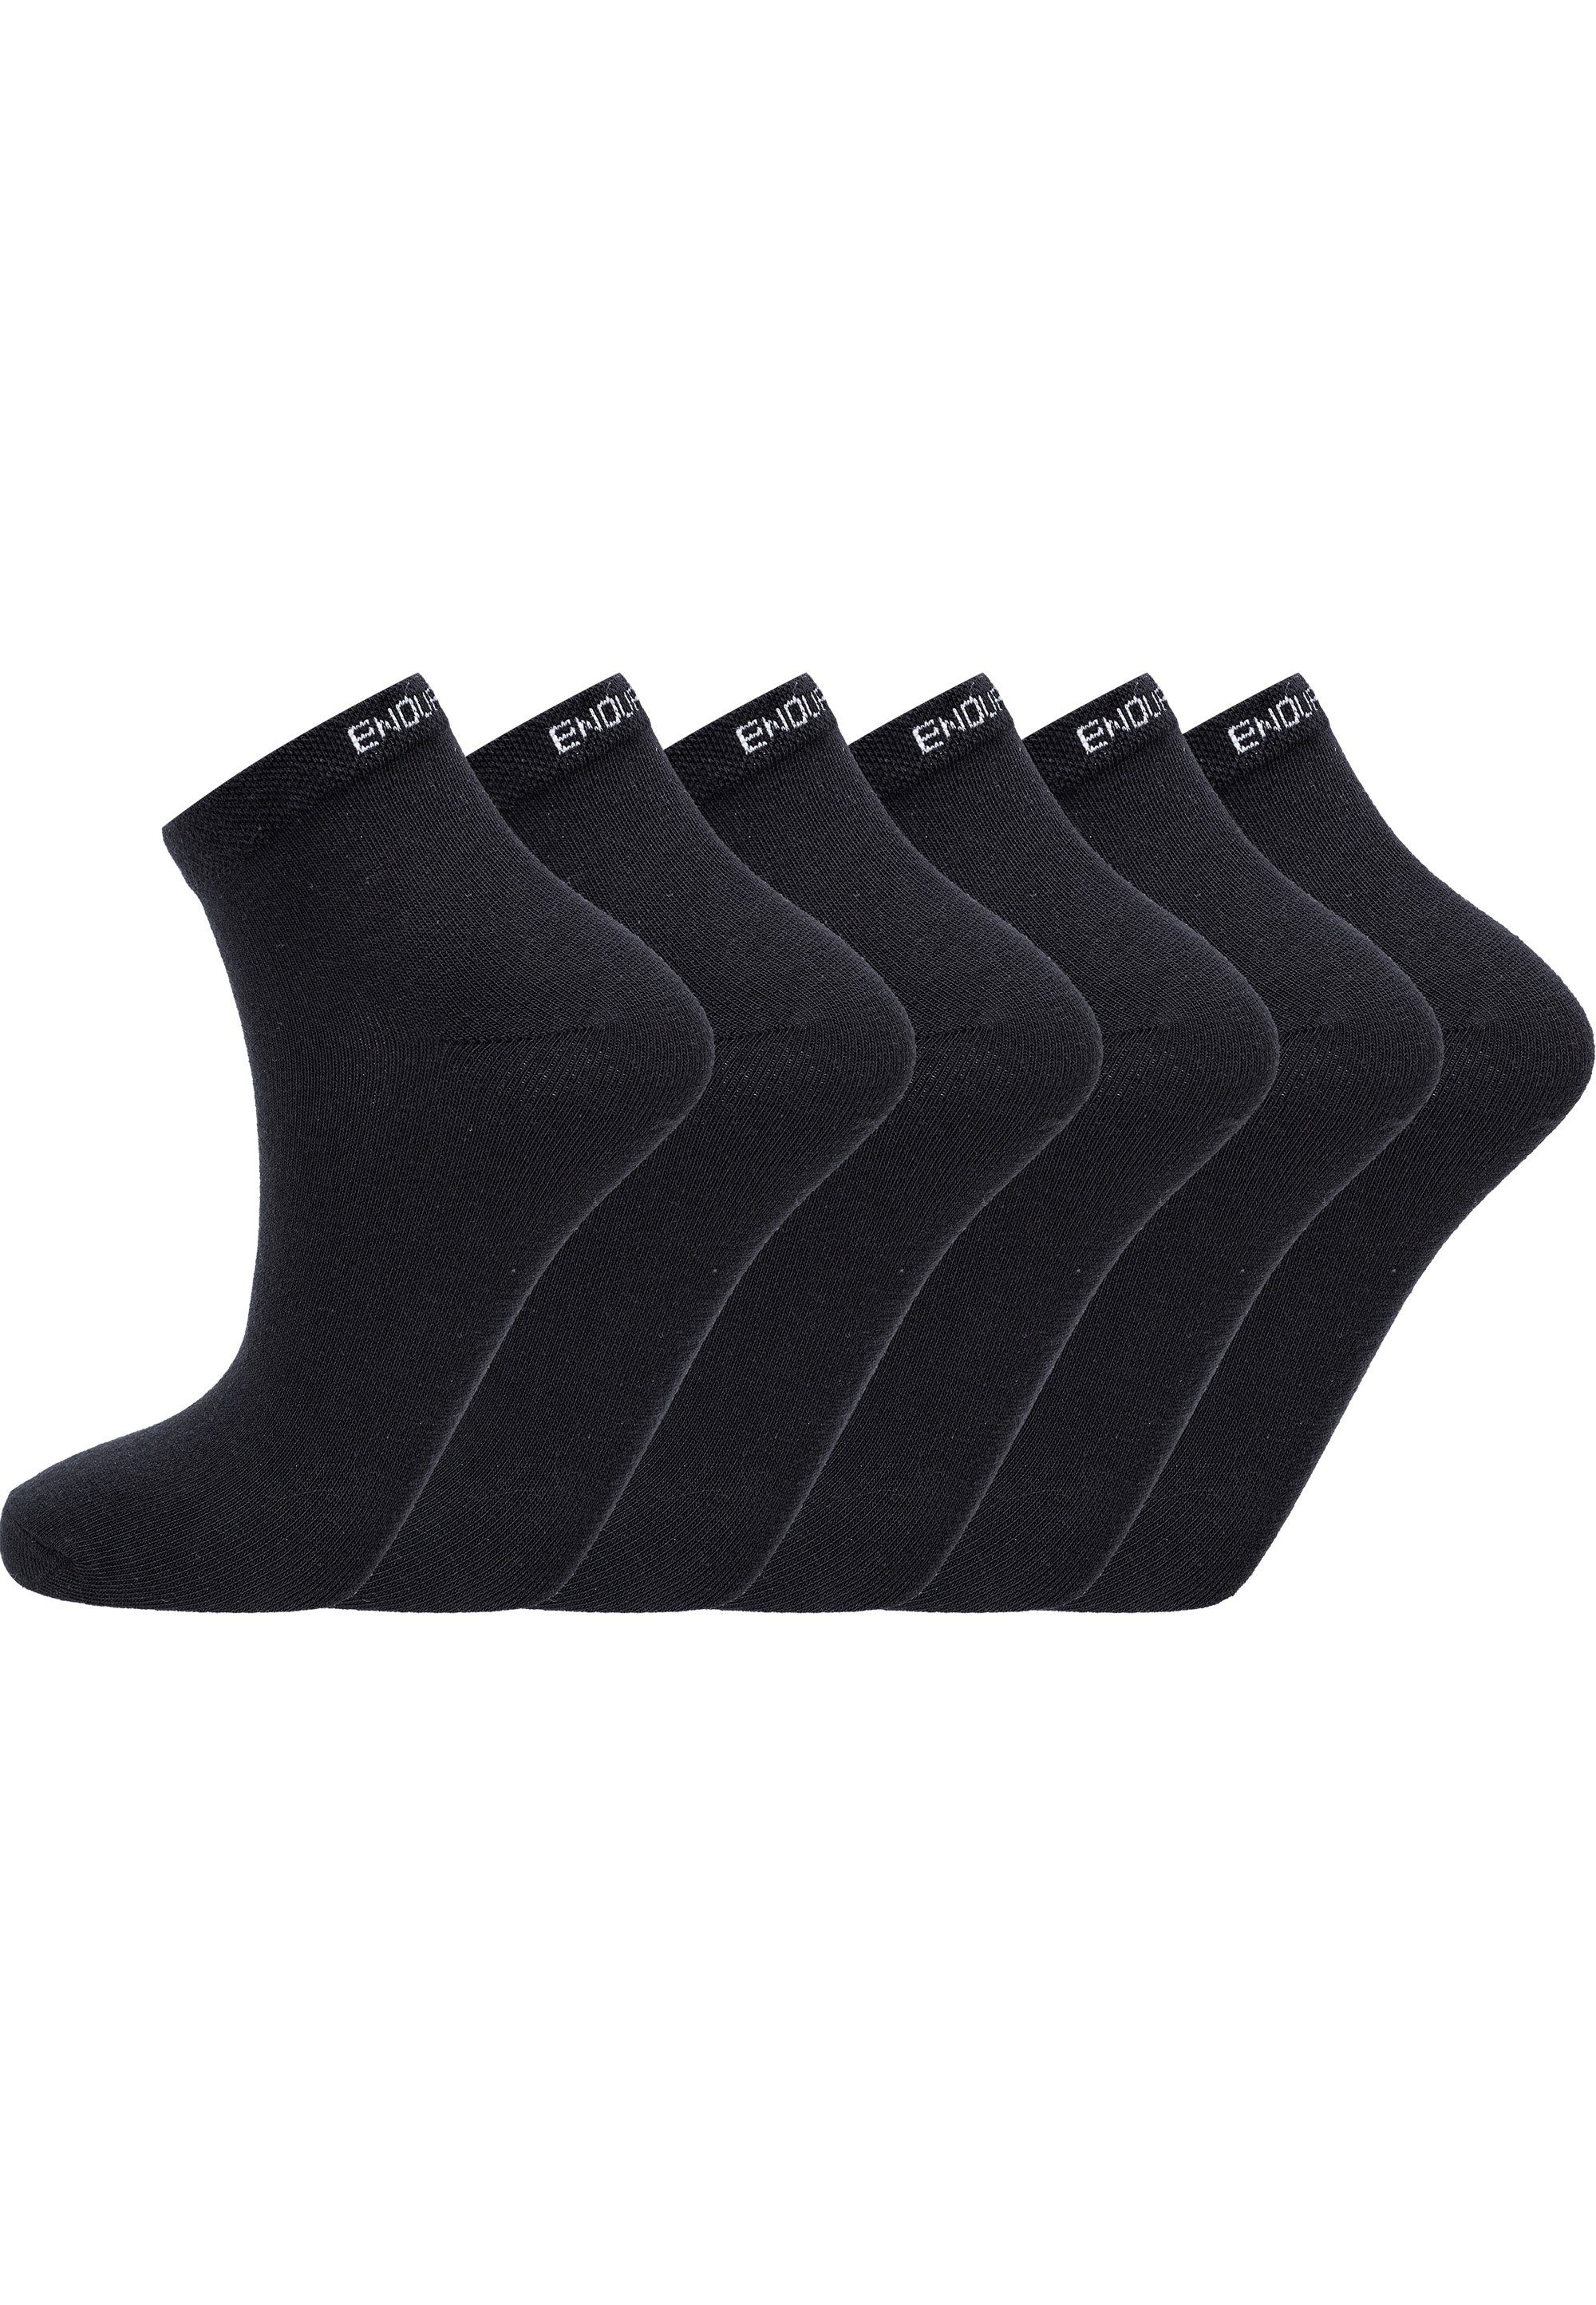 ENDURANCE Socken Ibi (6-Paar) mit sehr hohem Baumwolle-Anteil schwarz | Socken